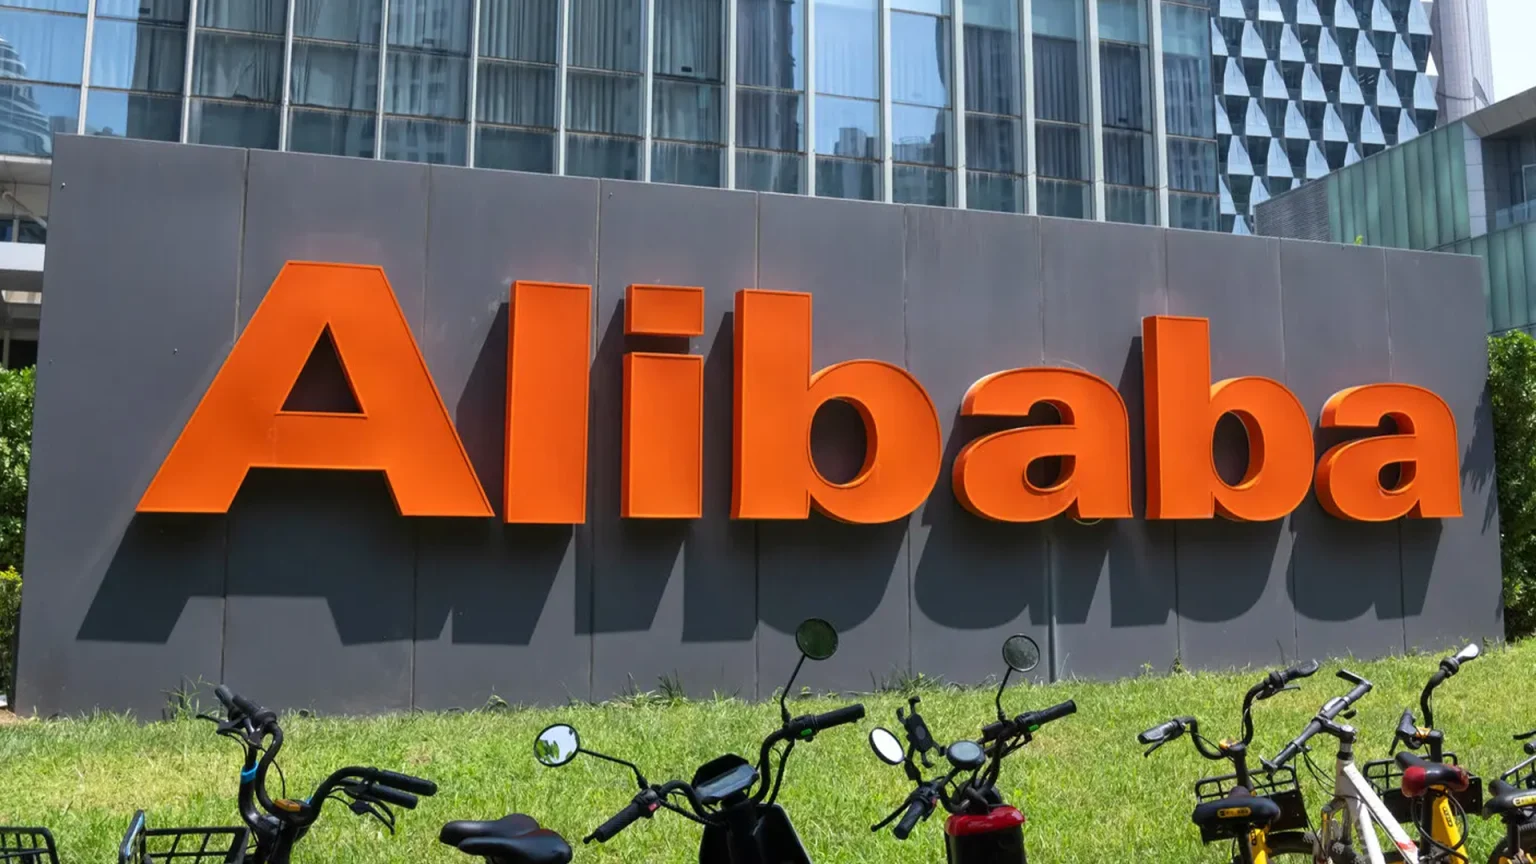 Çinli e-ticaret devi Alibaba, Türkiye'ye 2 milyar dolar yatırım yapacak